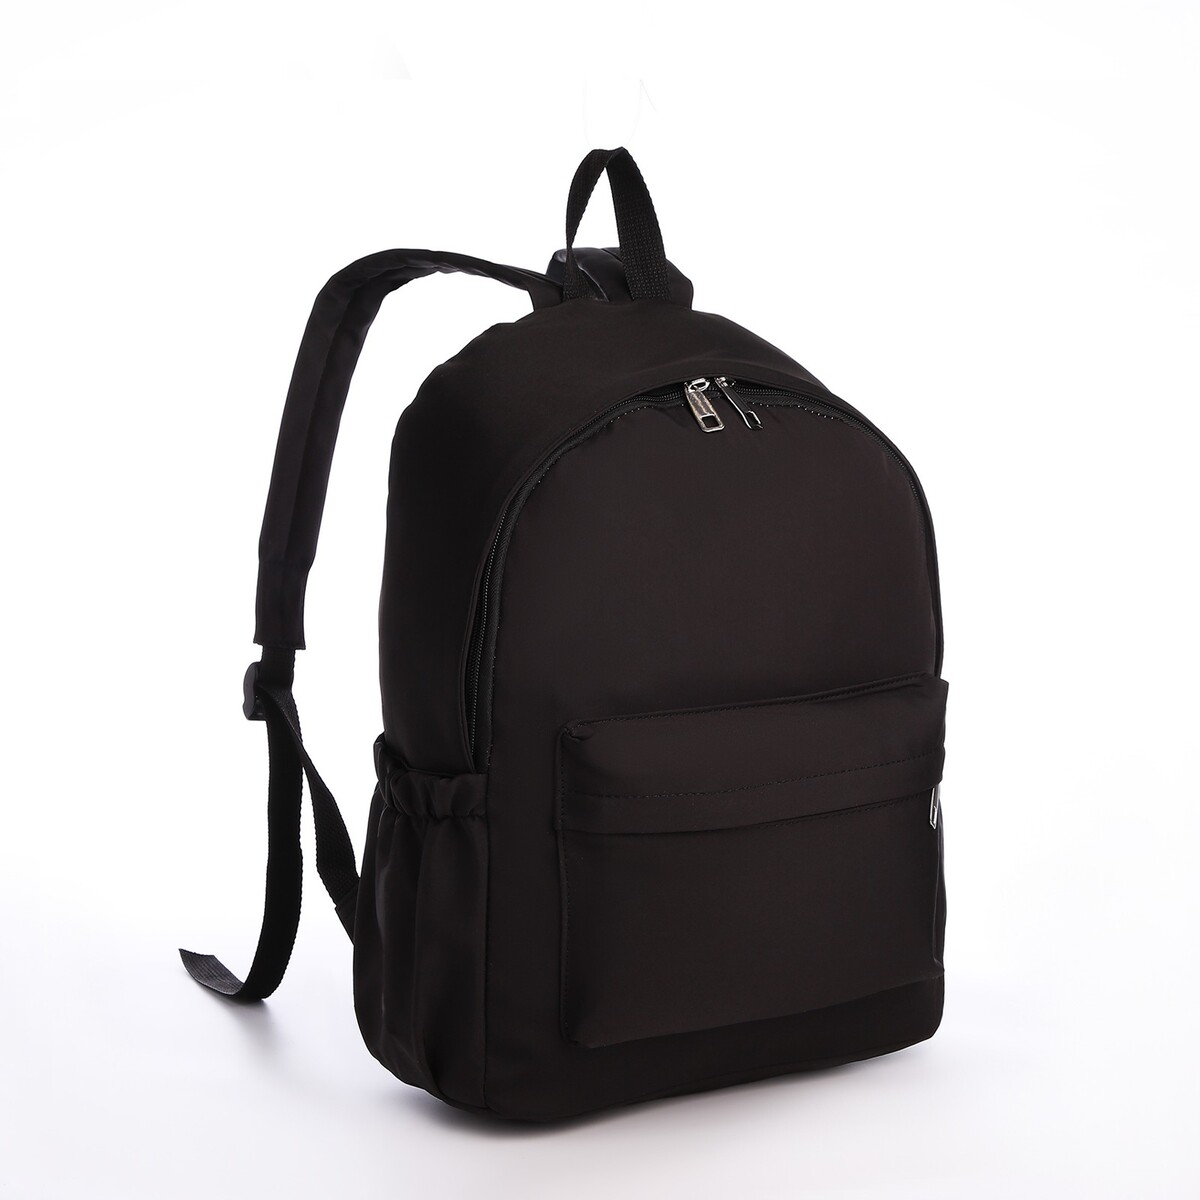 Рюкзак молодежный из текстиля на молнии, 4 кармана, цвет черный